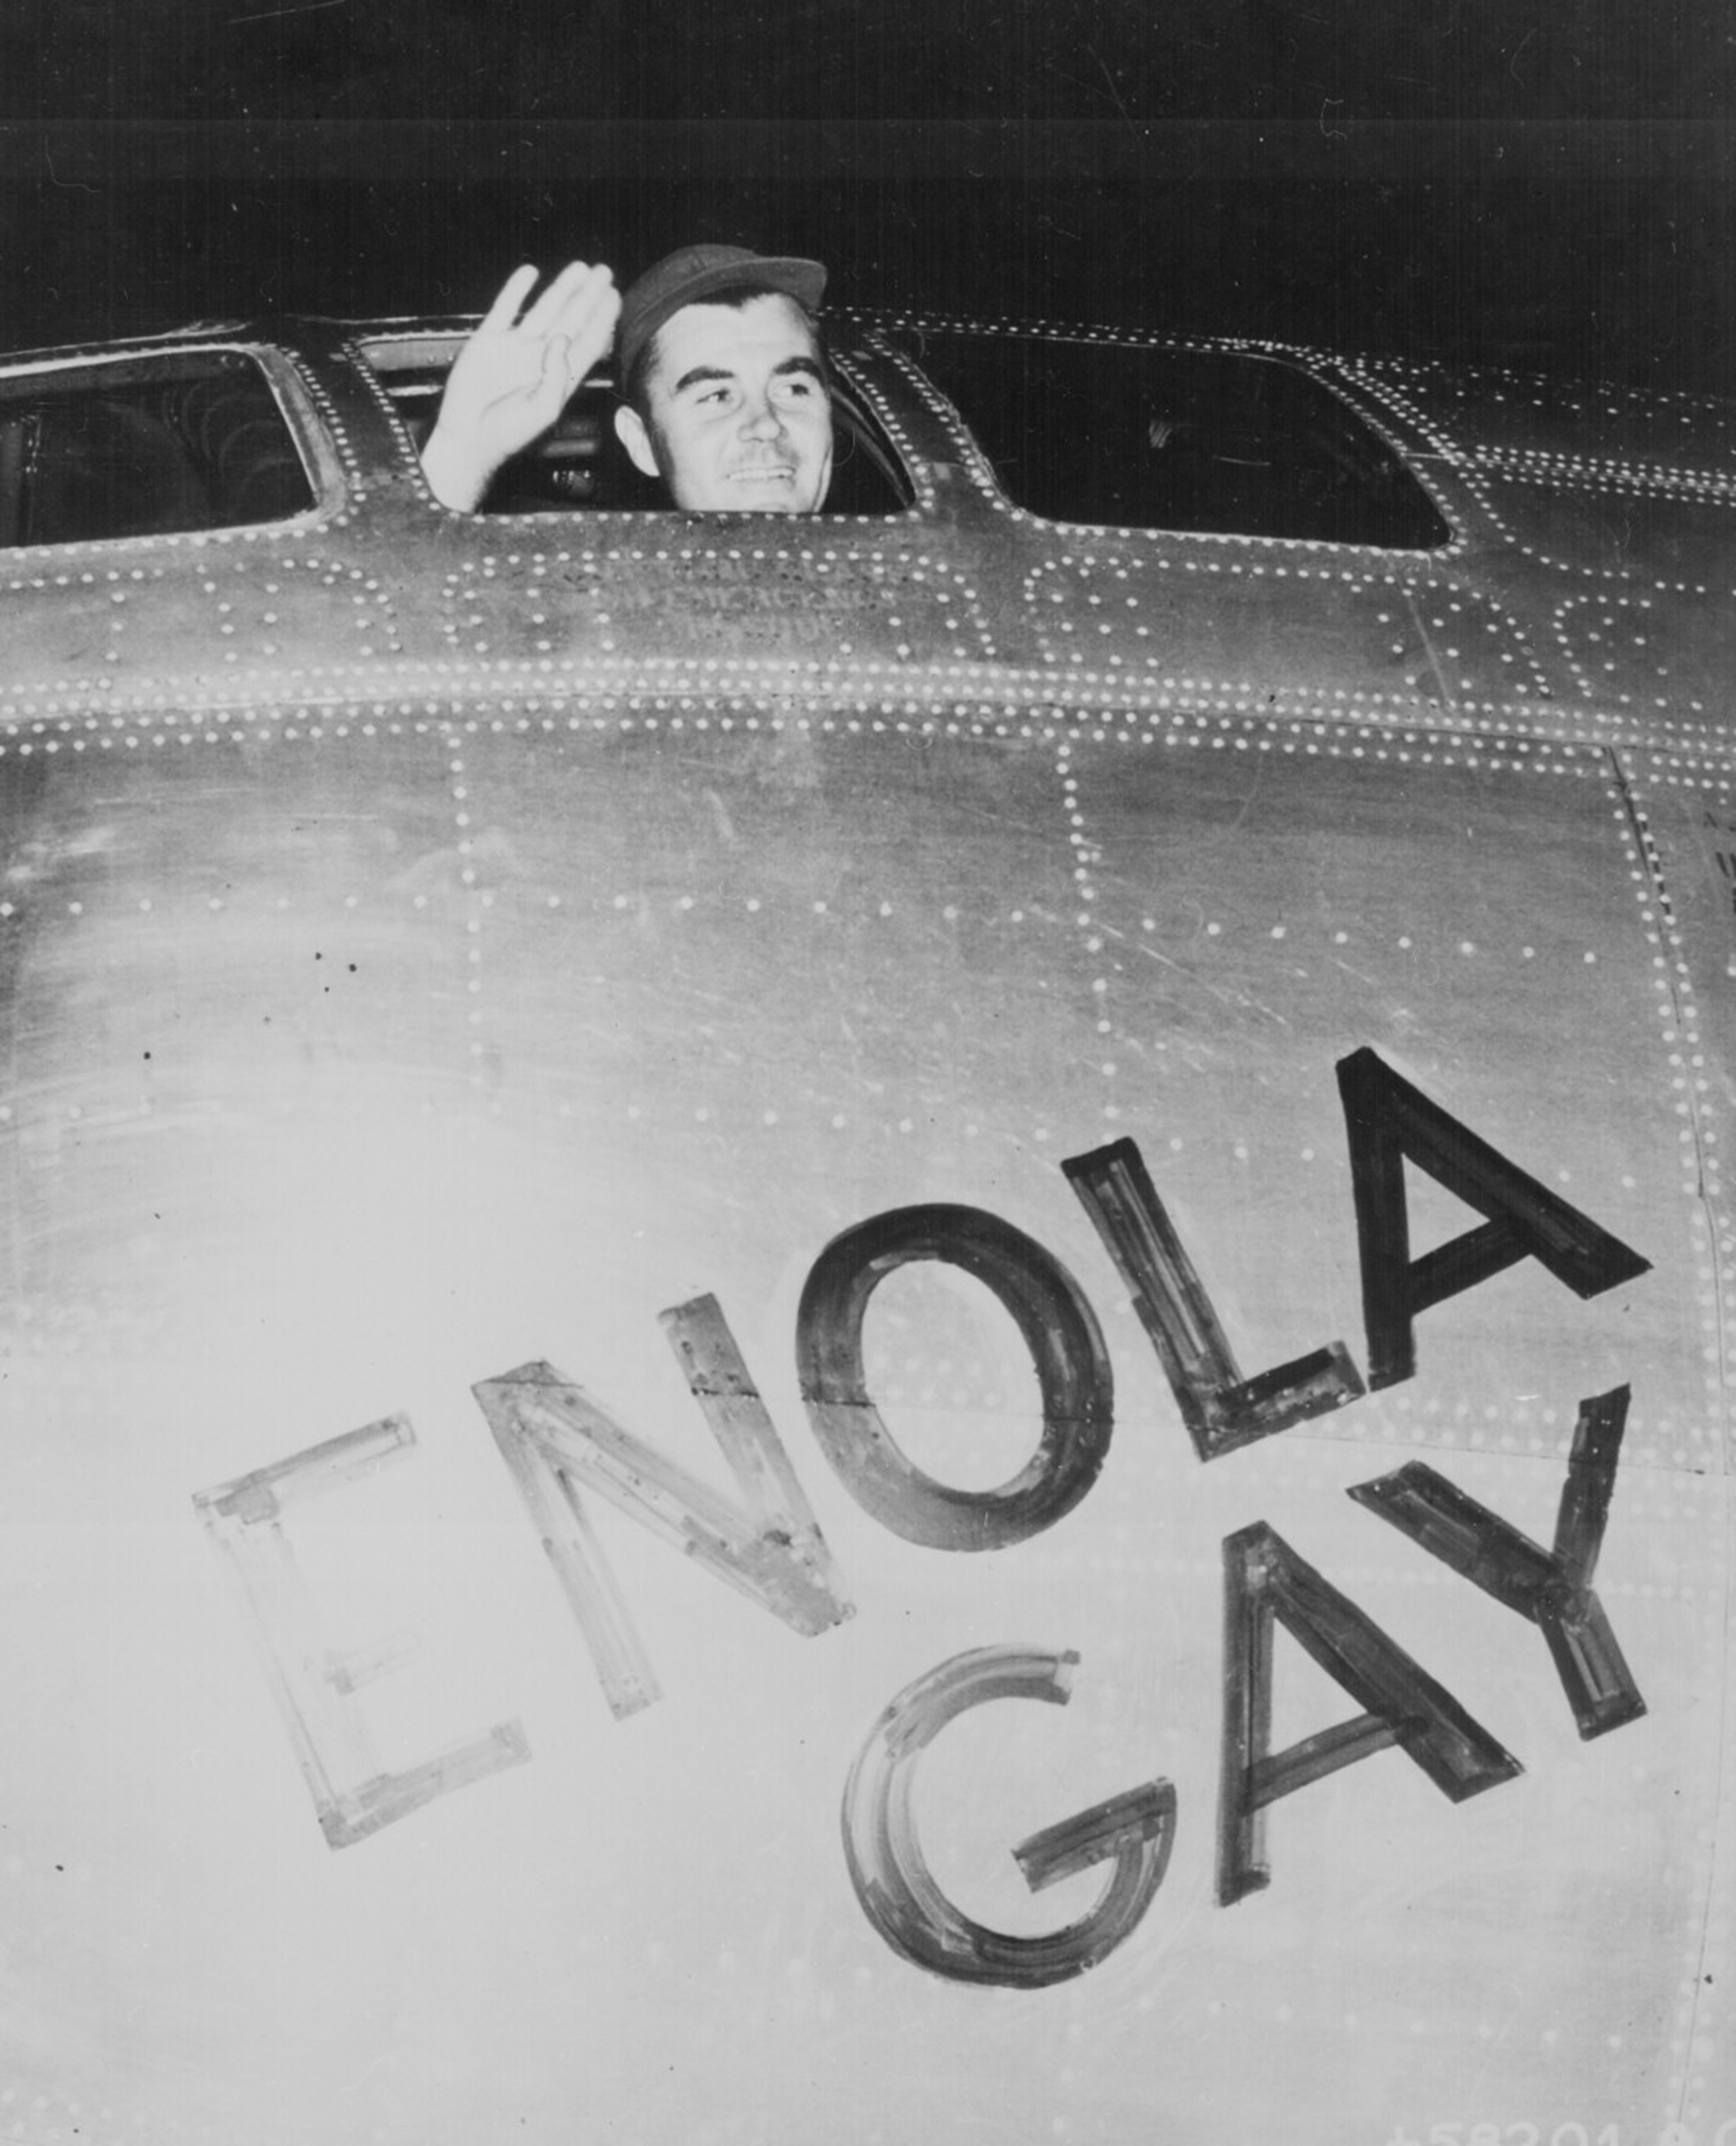 El coronel Paul Tibbets, piloto del Enola Gay, el avión que lanzó la bomba atómica sobre Hiroshima, saluda desde su cabina antes de despegar de Tinian el 6 de agosto de 1945 (Administración Nacional de Archivos y Registros de EE. UU./ REUTERS)